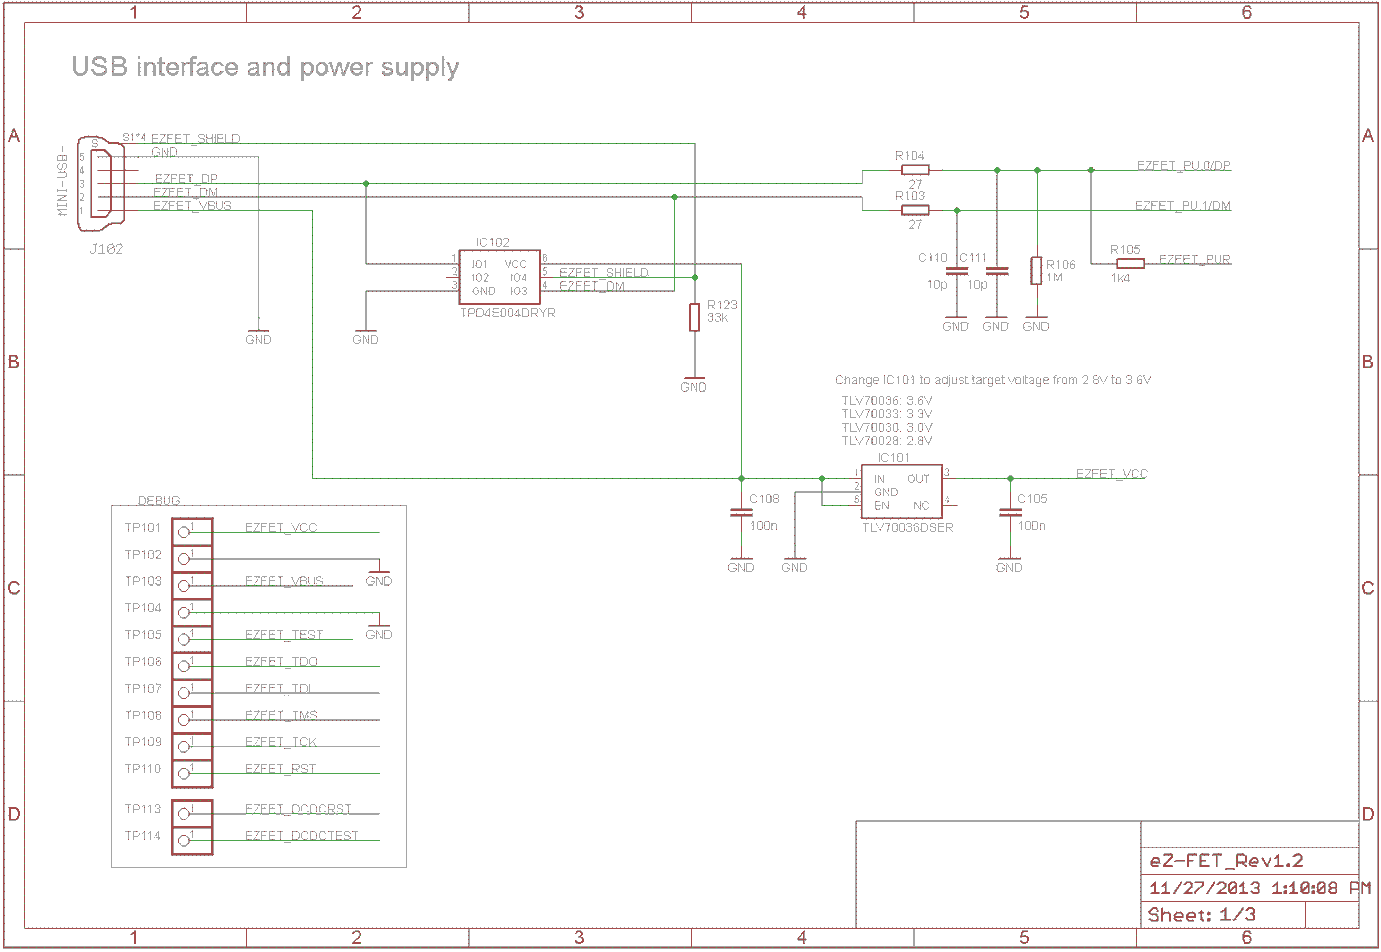 schematic-ez-fet-rev-1p2-usb-connection.png